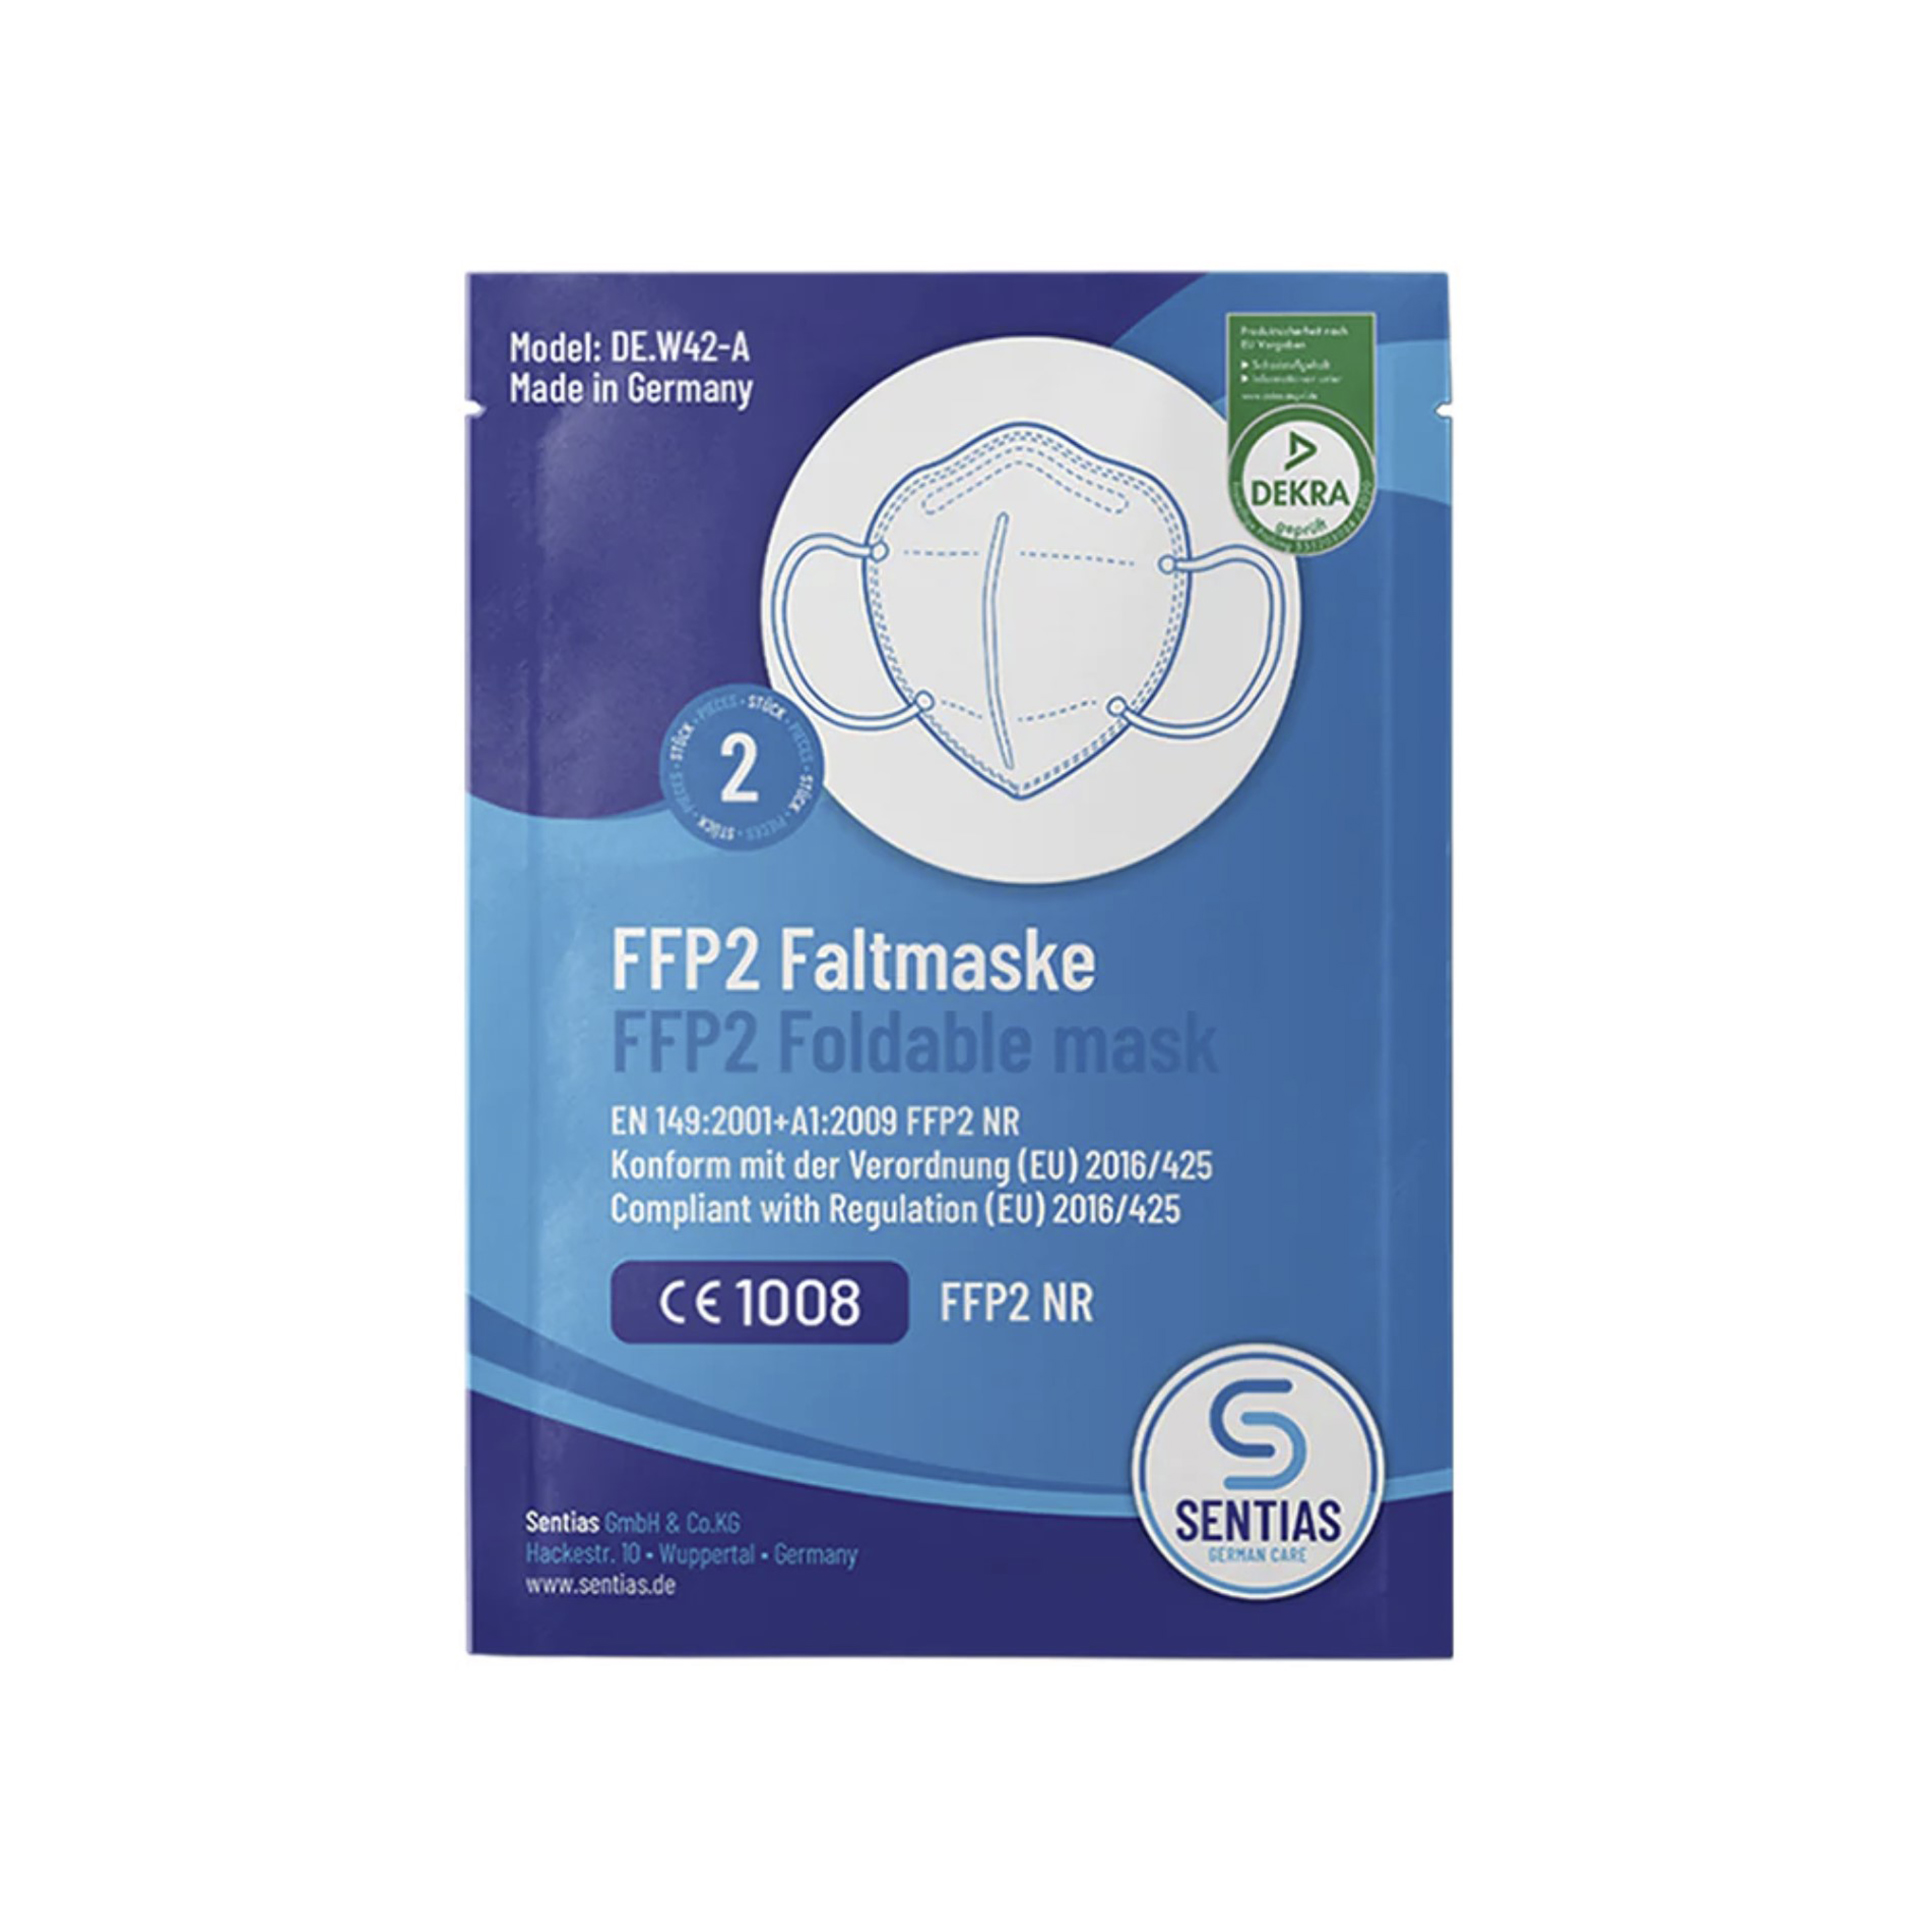 FFP2 Faltmaske, EN149 Modell DE.W42-A (Made in Germany) (2 Stk.)